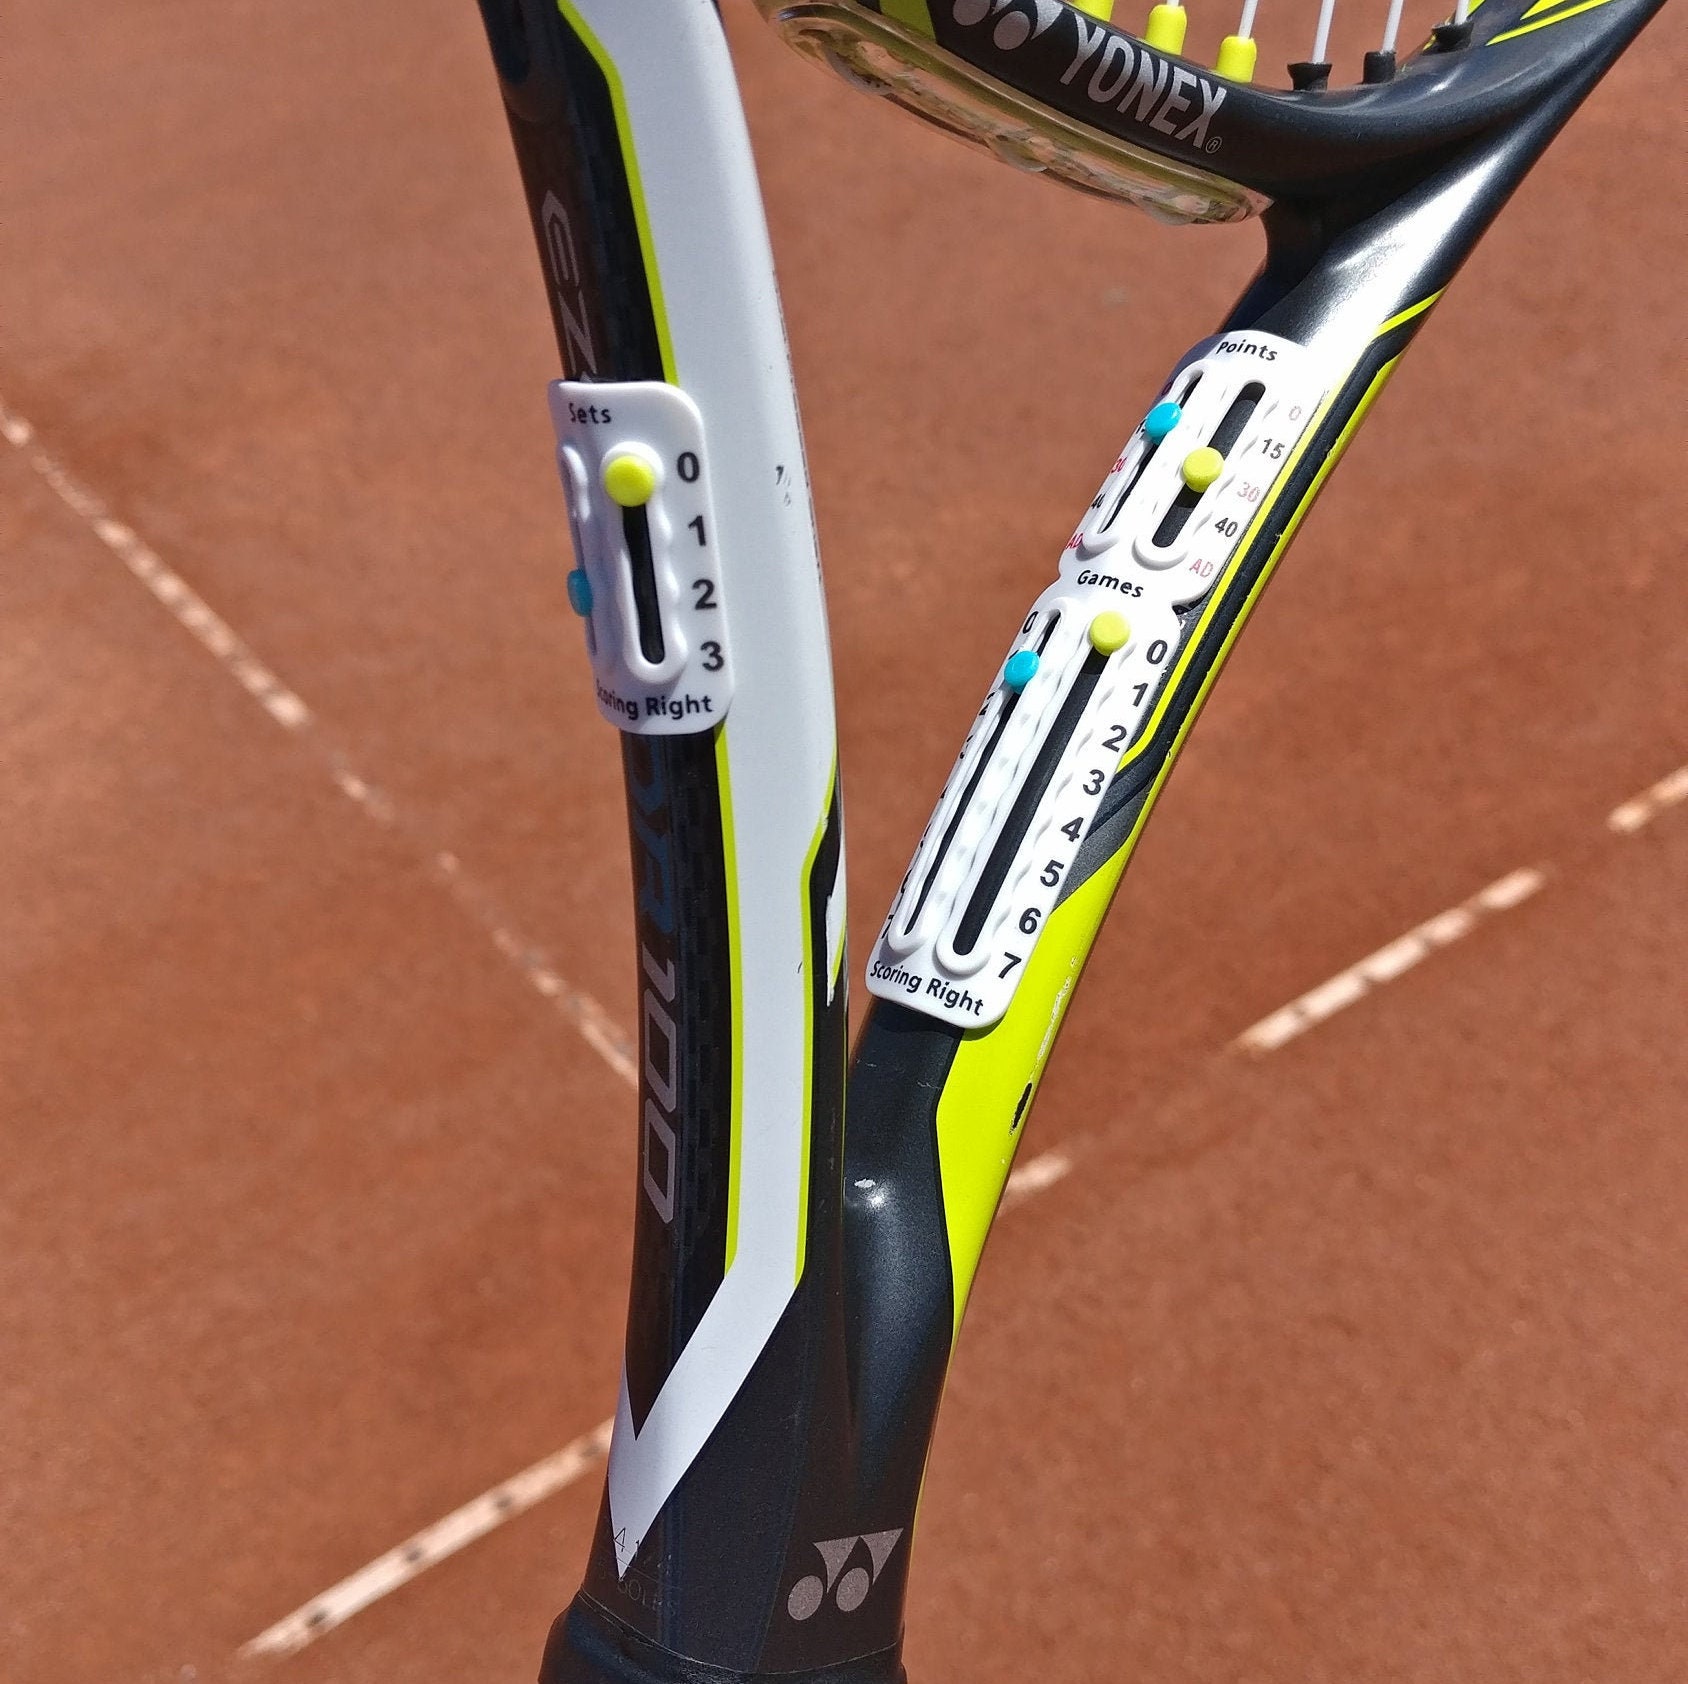 Scoring Right Anotador portátil de raqueta de tenis: tablero de puntuación  de fácil montaje para mantener la puntuación de puntos, juegos y sets  Conforme a la ITF -  México